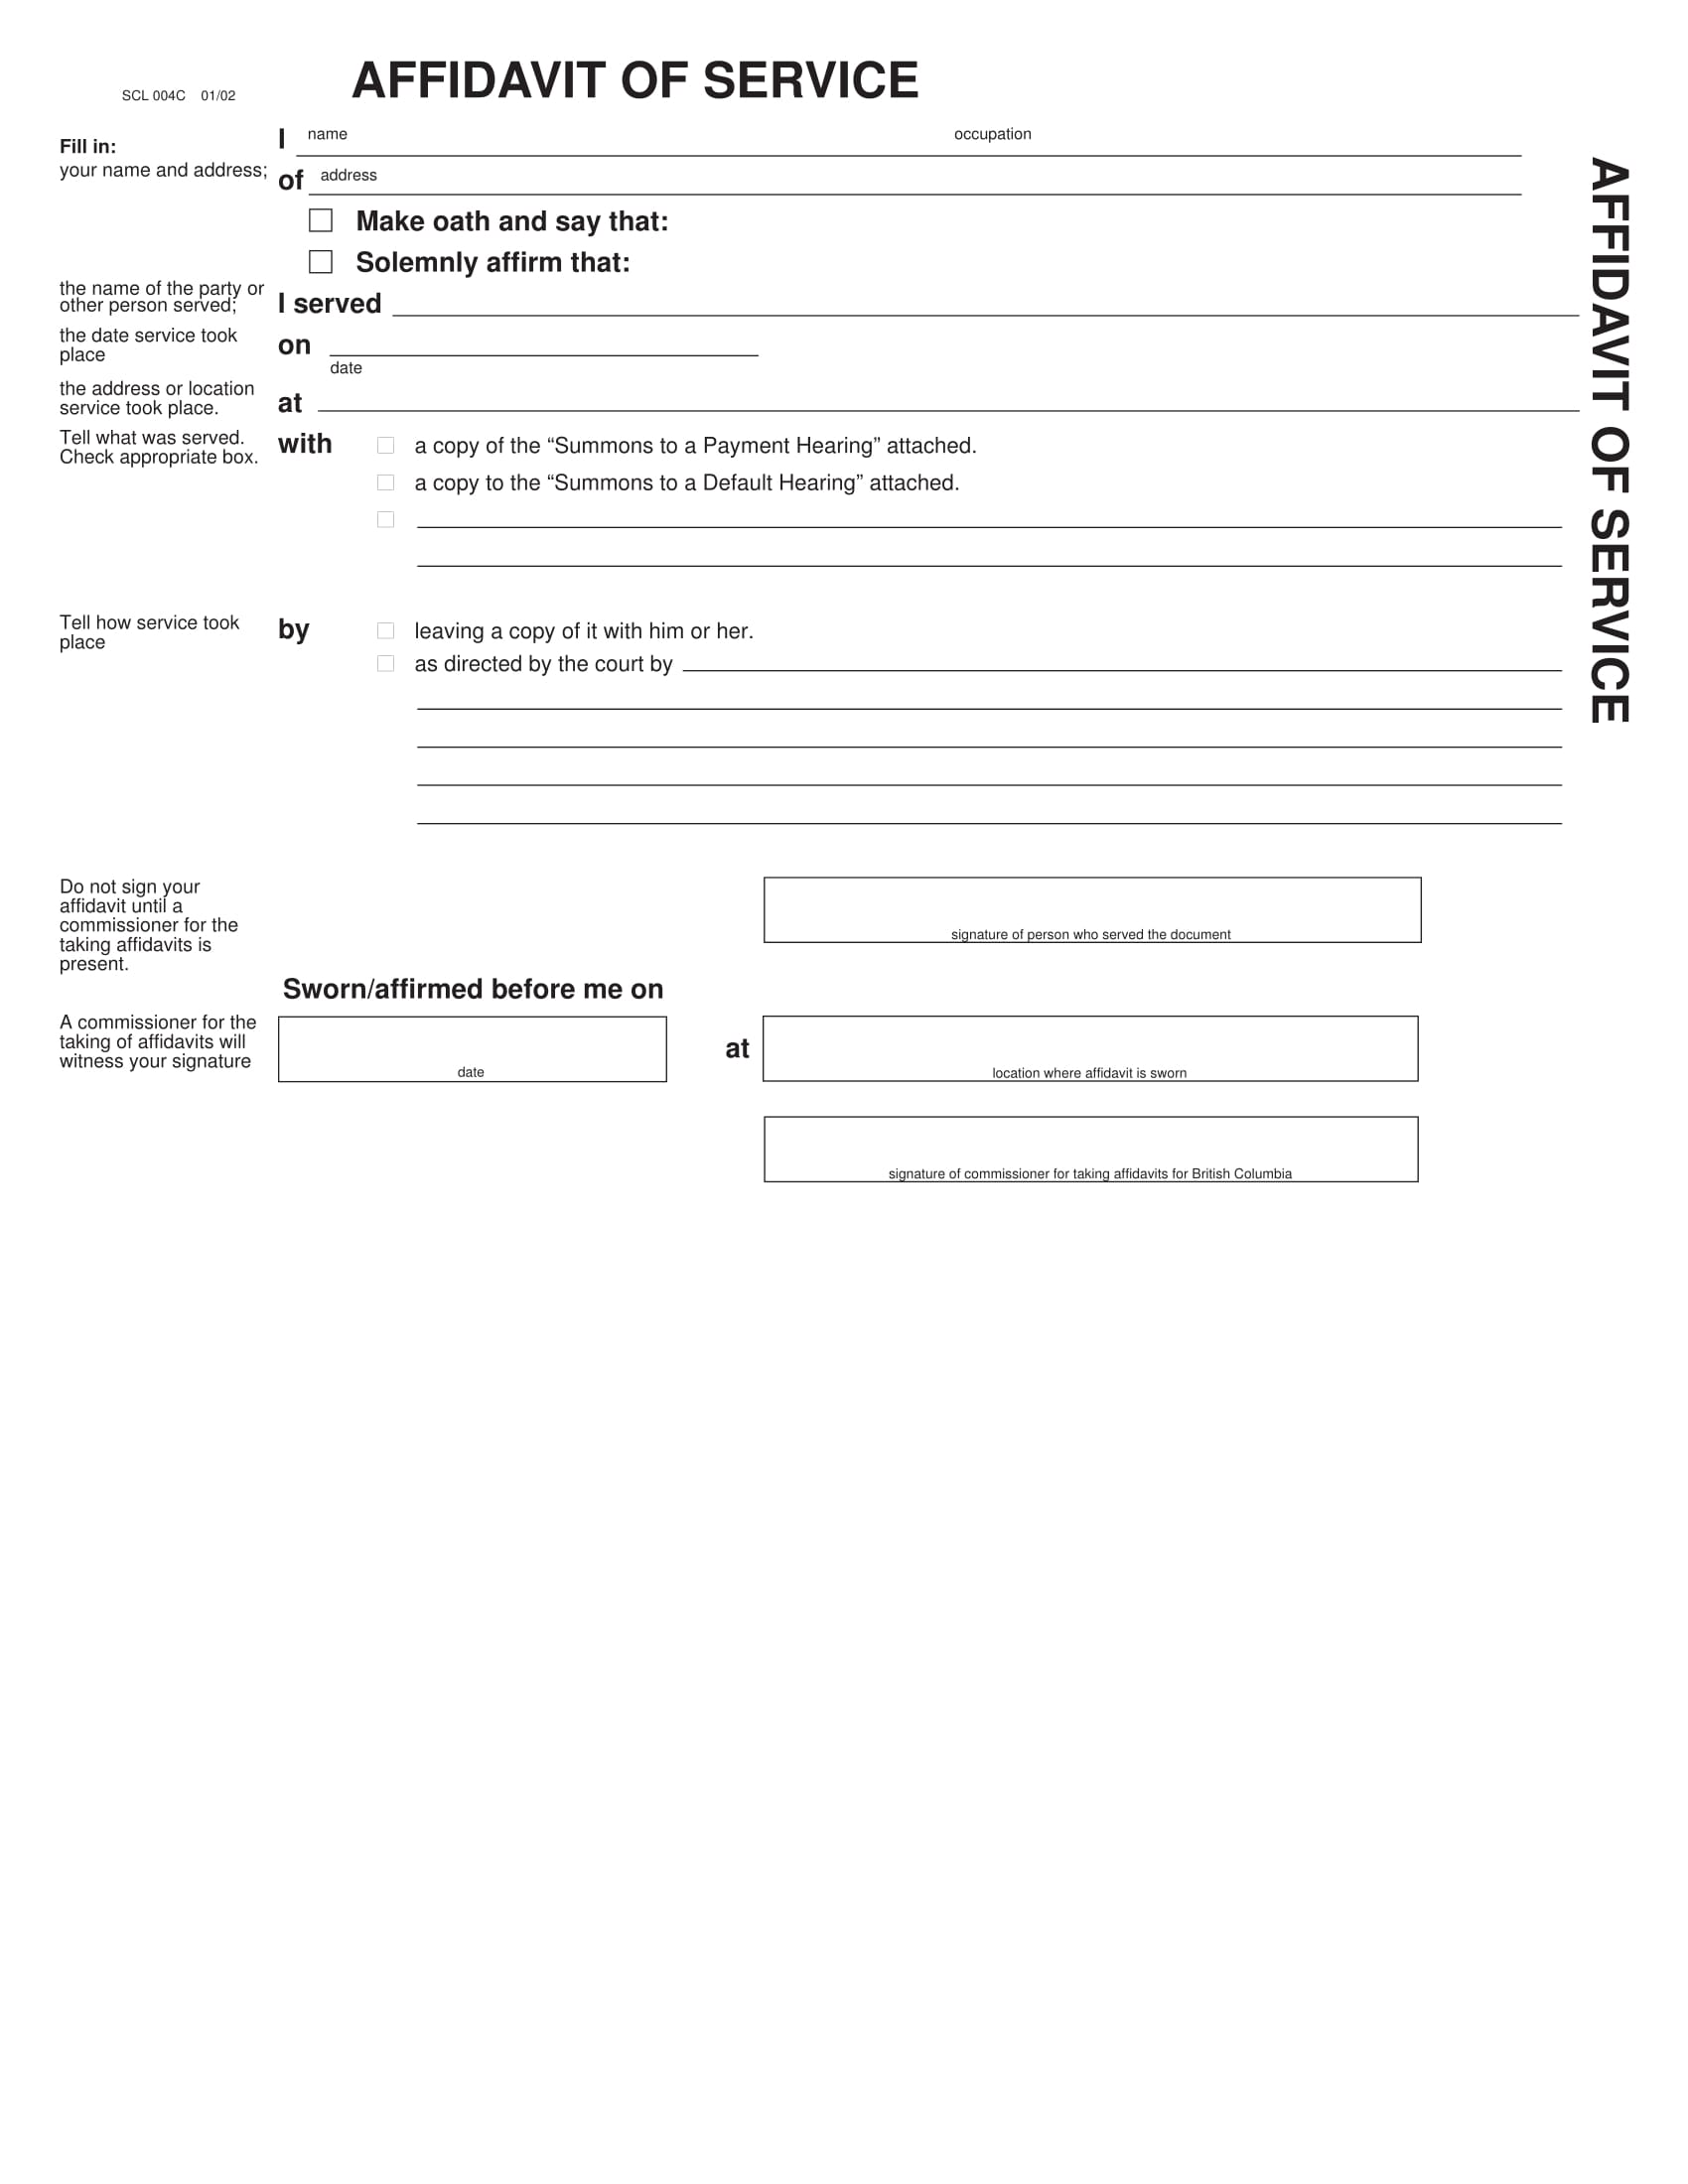 affidavit of service form 1